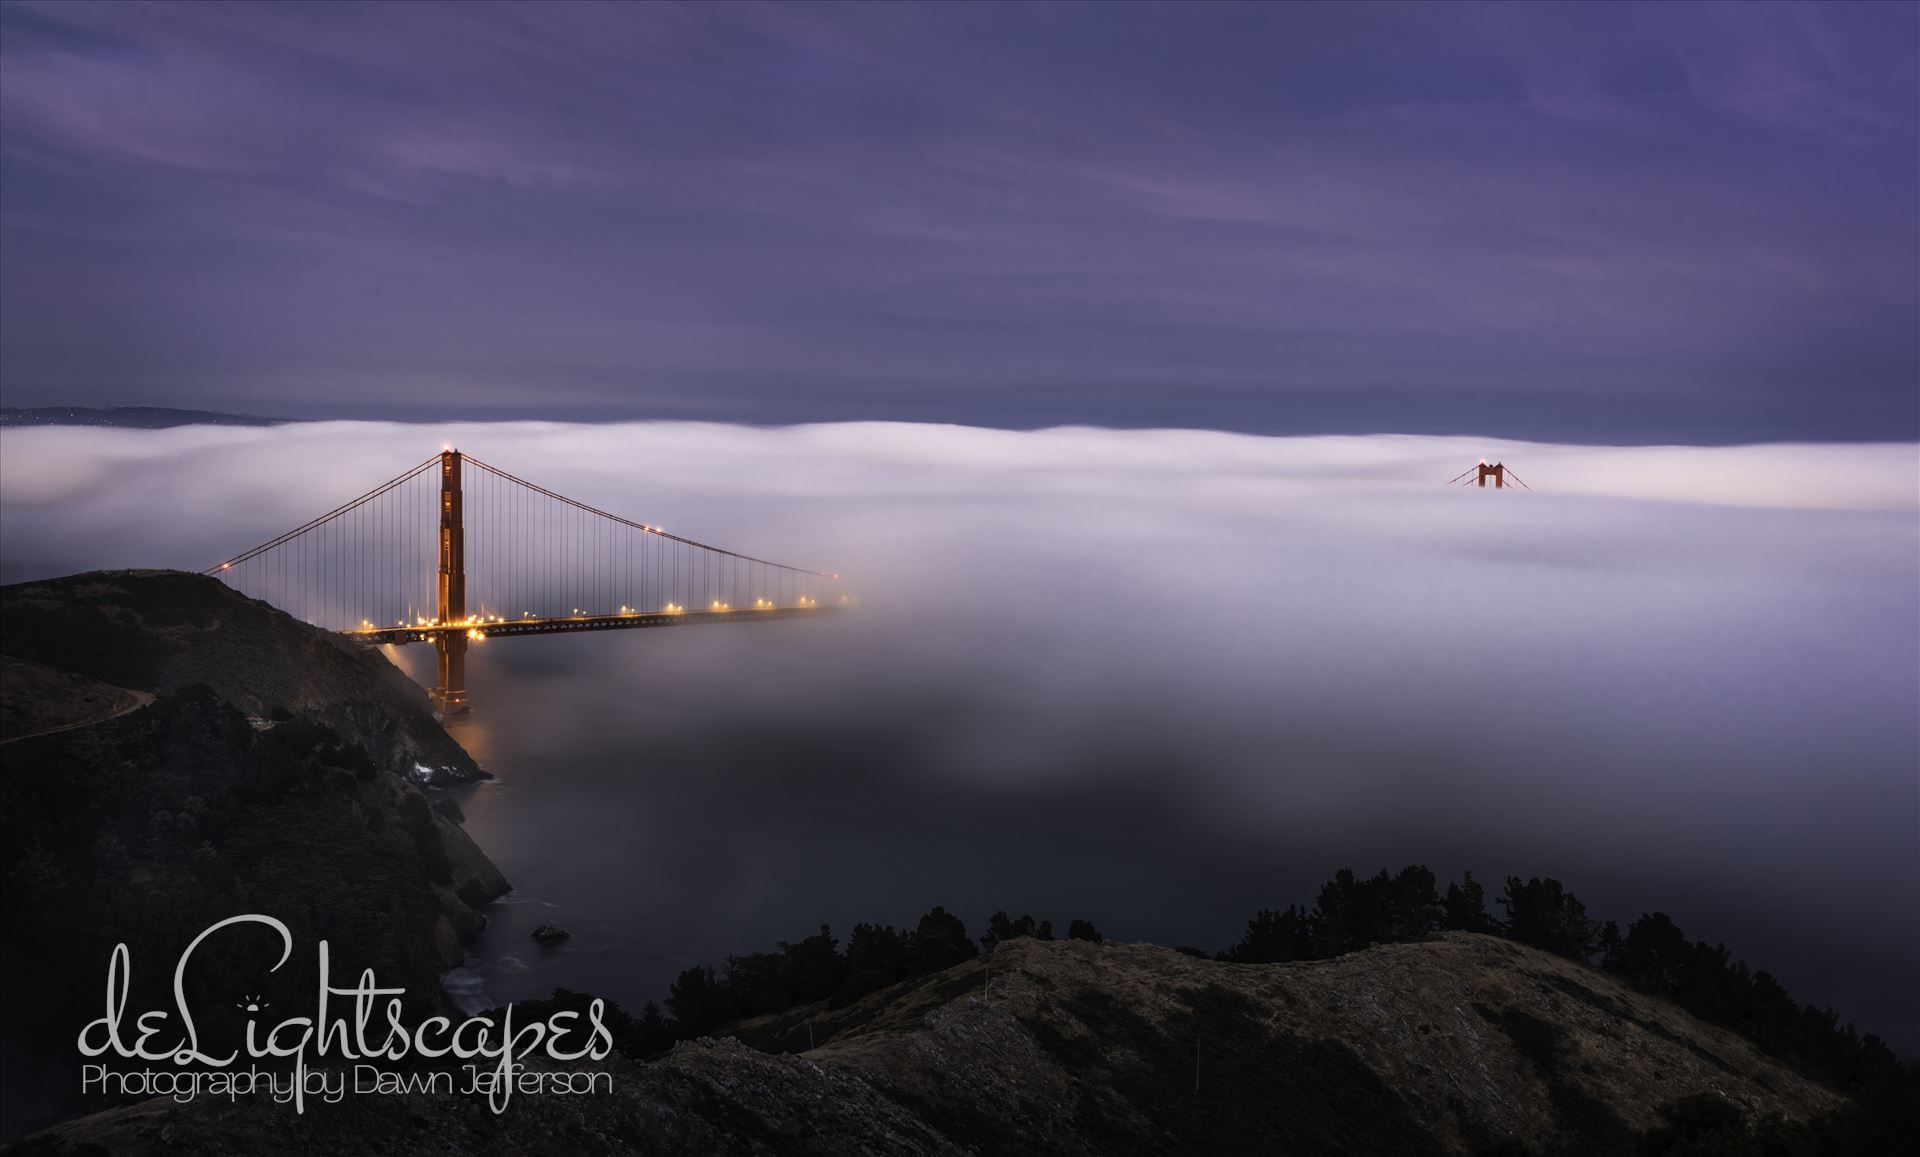 Twilight Fog - Low fog engulfs the Golden Gate Bridge. by Dawn Jefferson